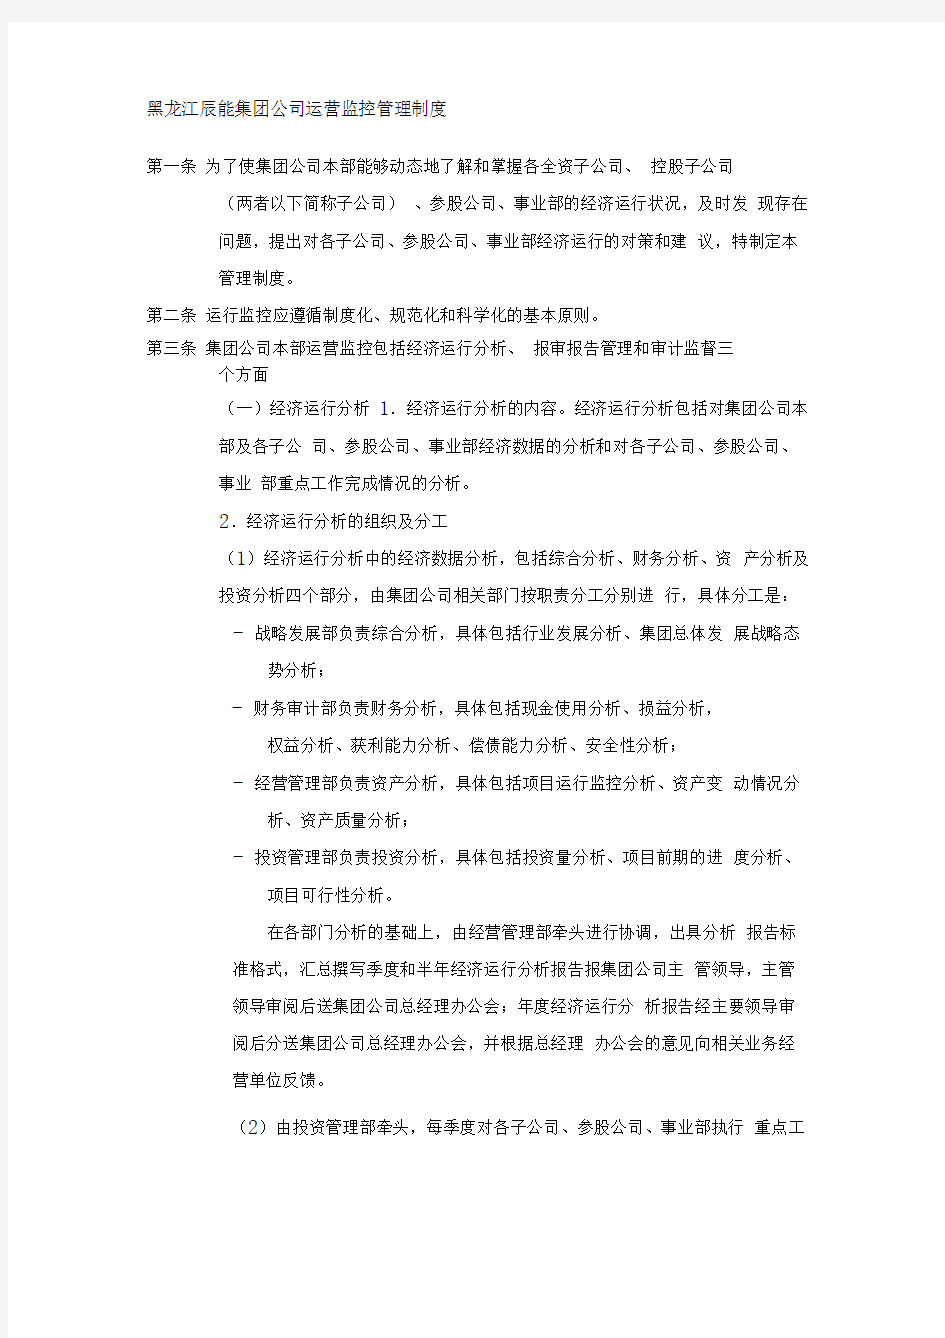 黑龙江辰能集团公司运营监控管理制度